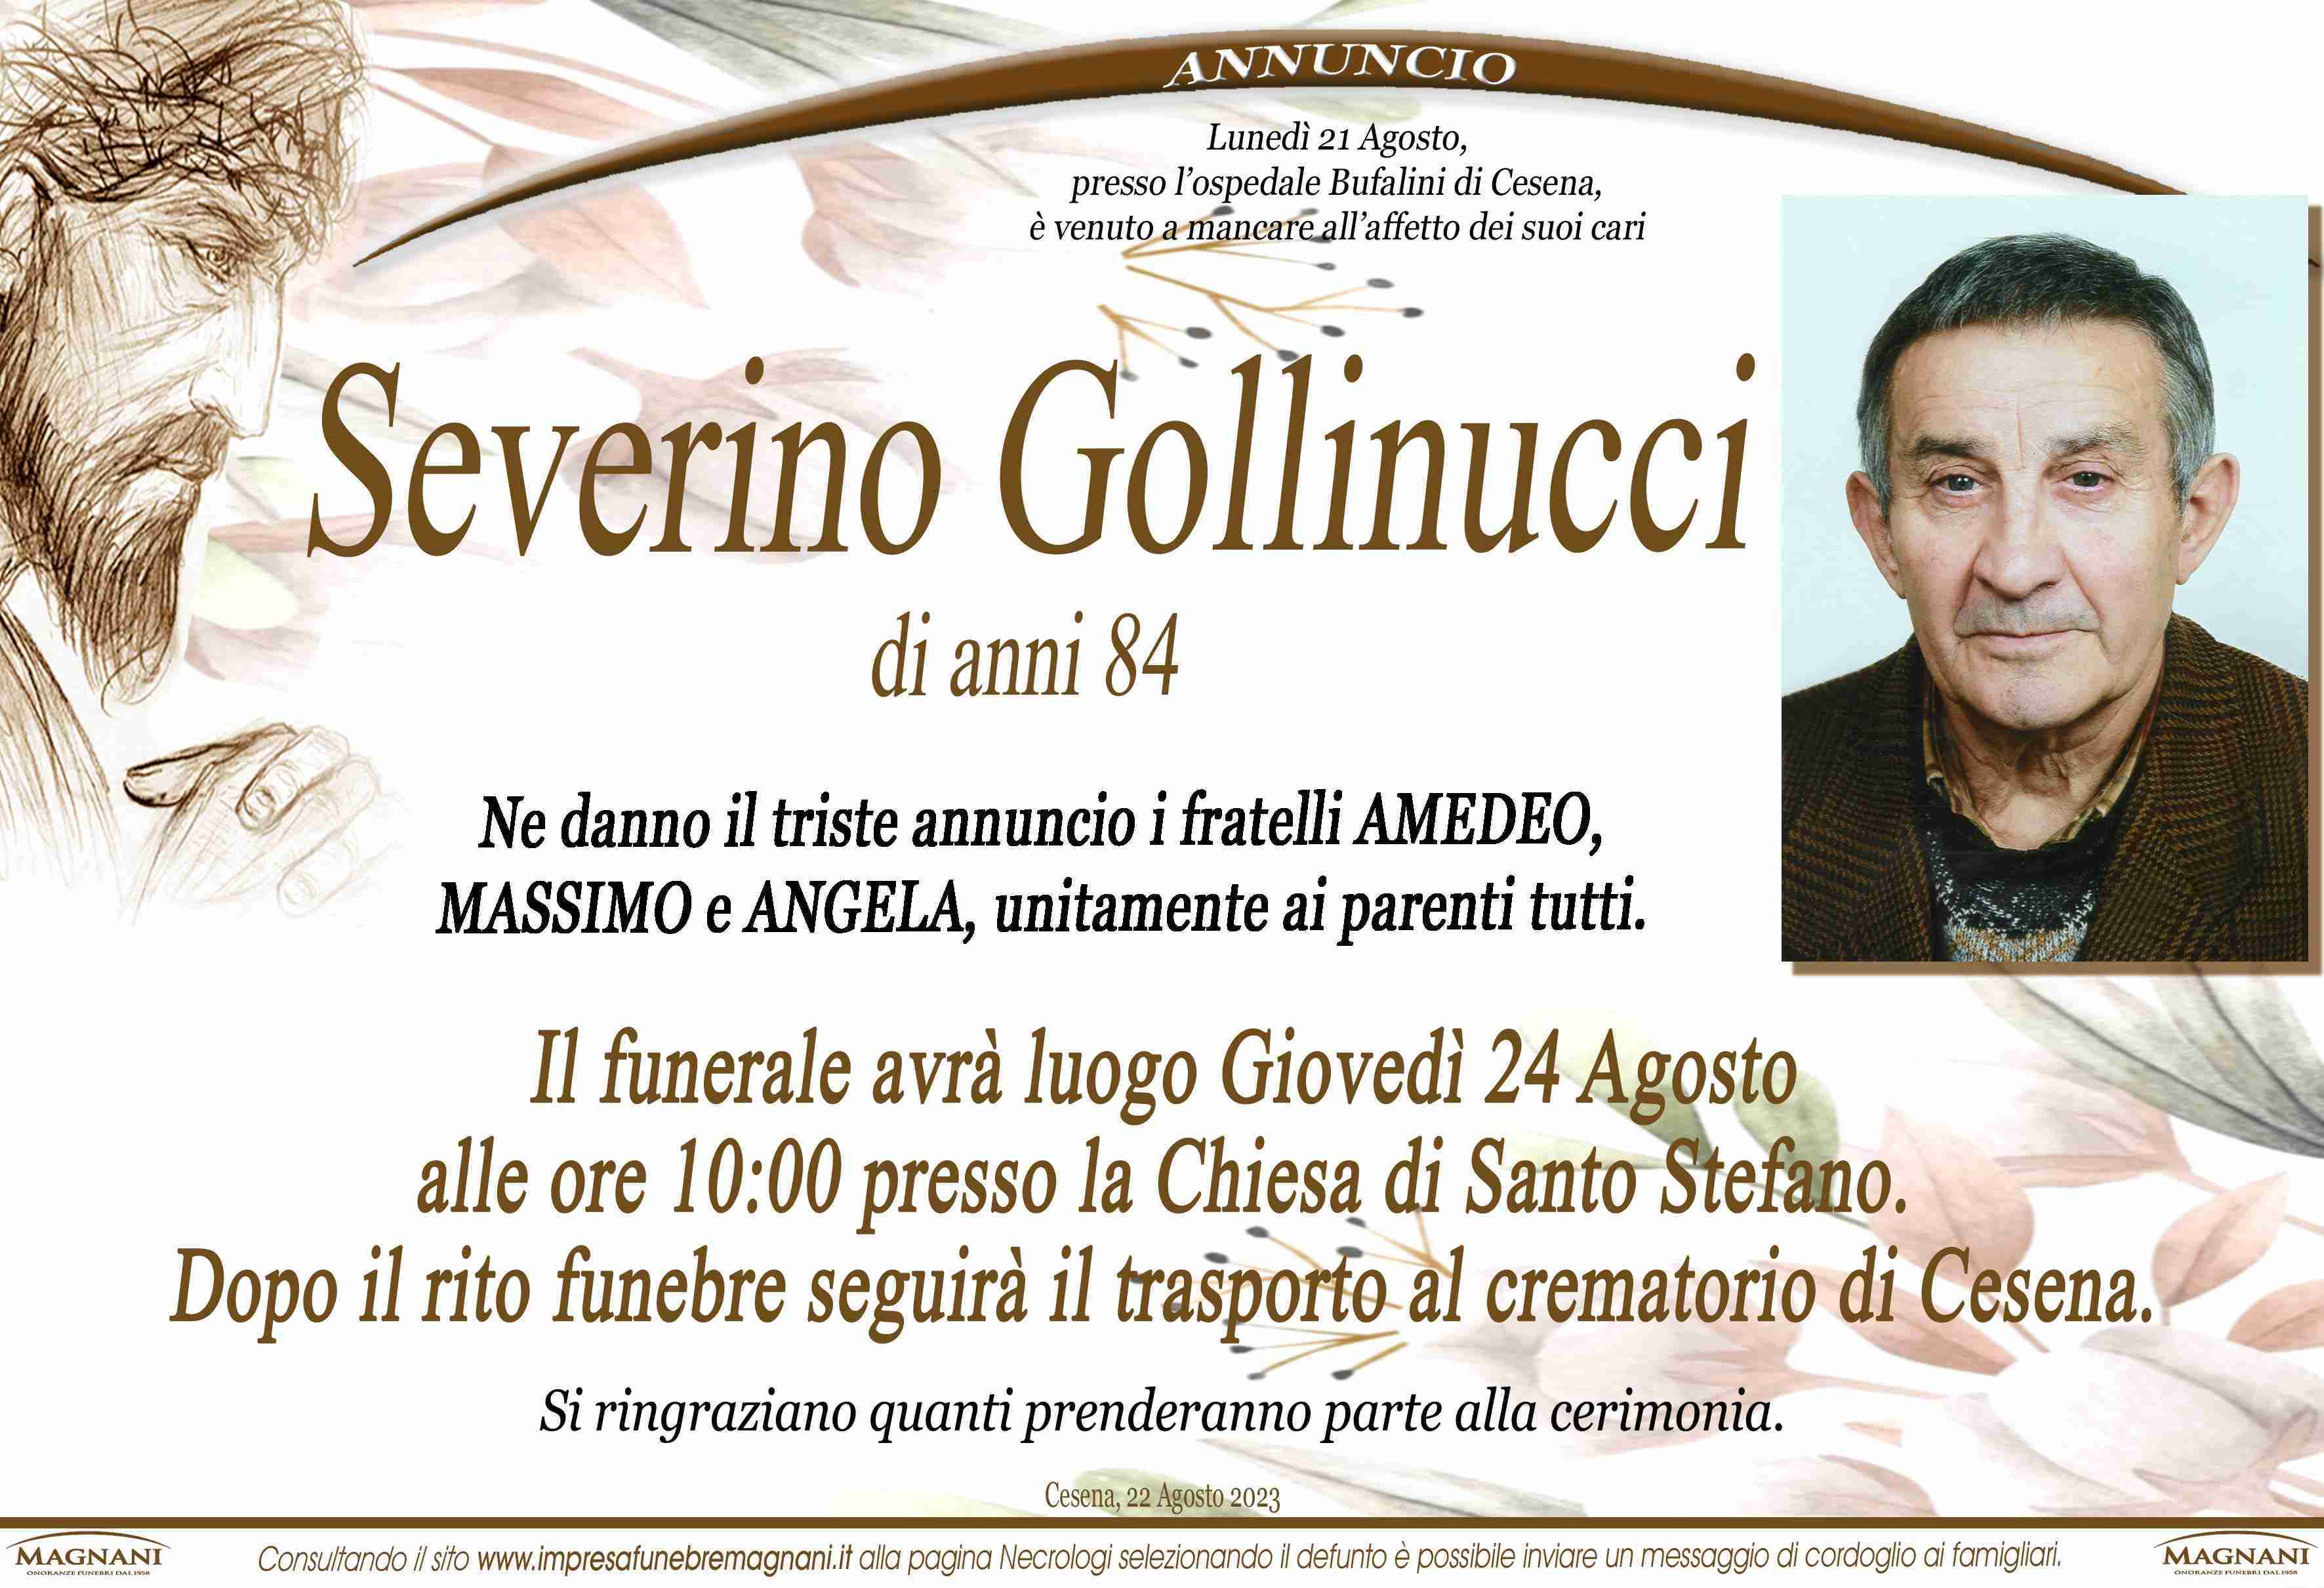 Severino Gollinucci